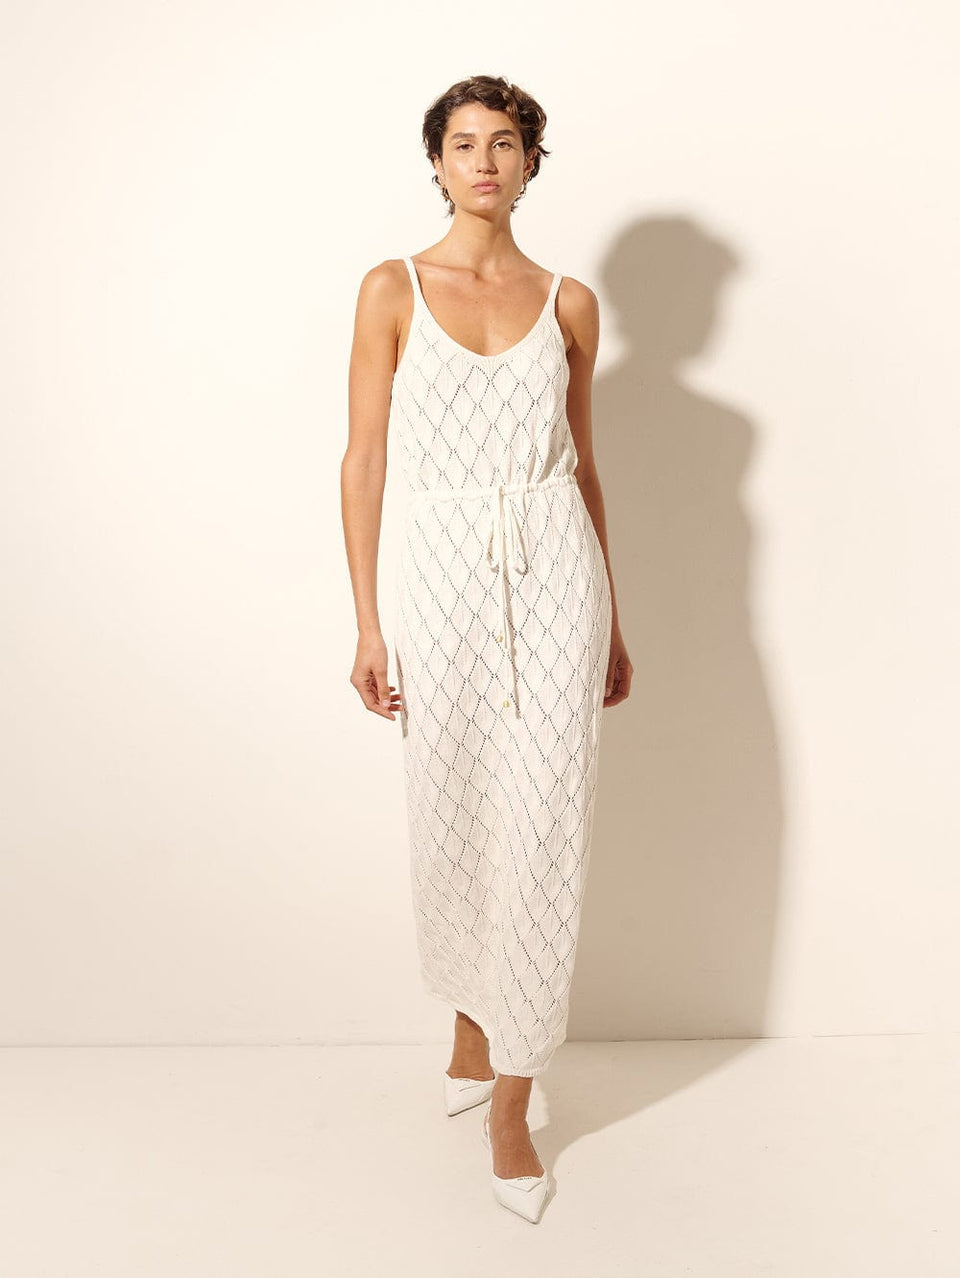 Claudia Strappy Knit Dress KIVARI | Model wears cream knit midi dress